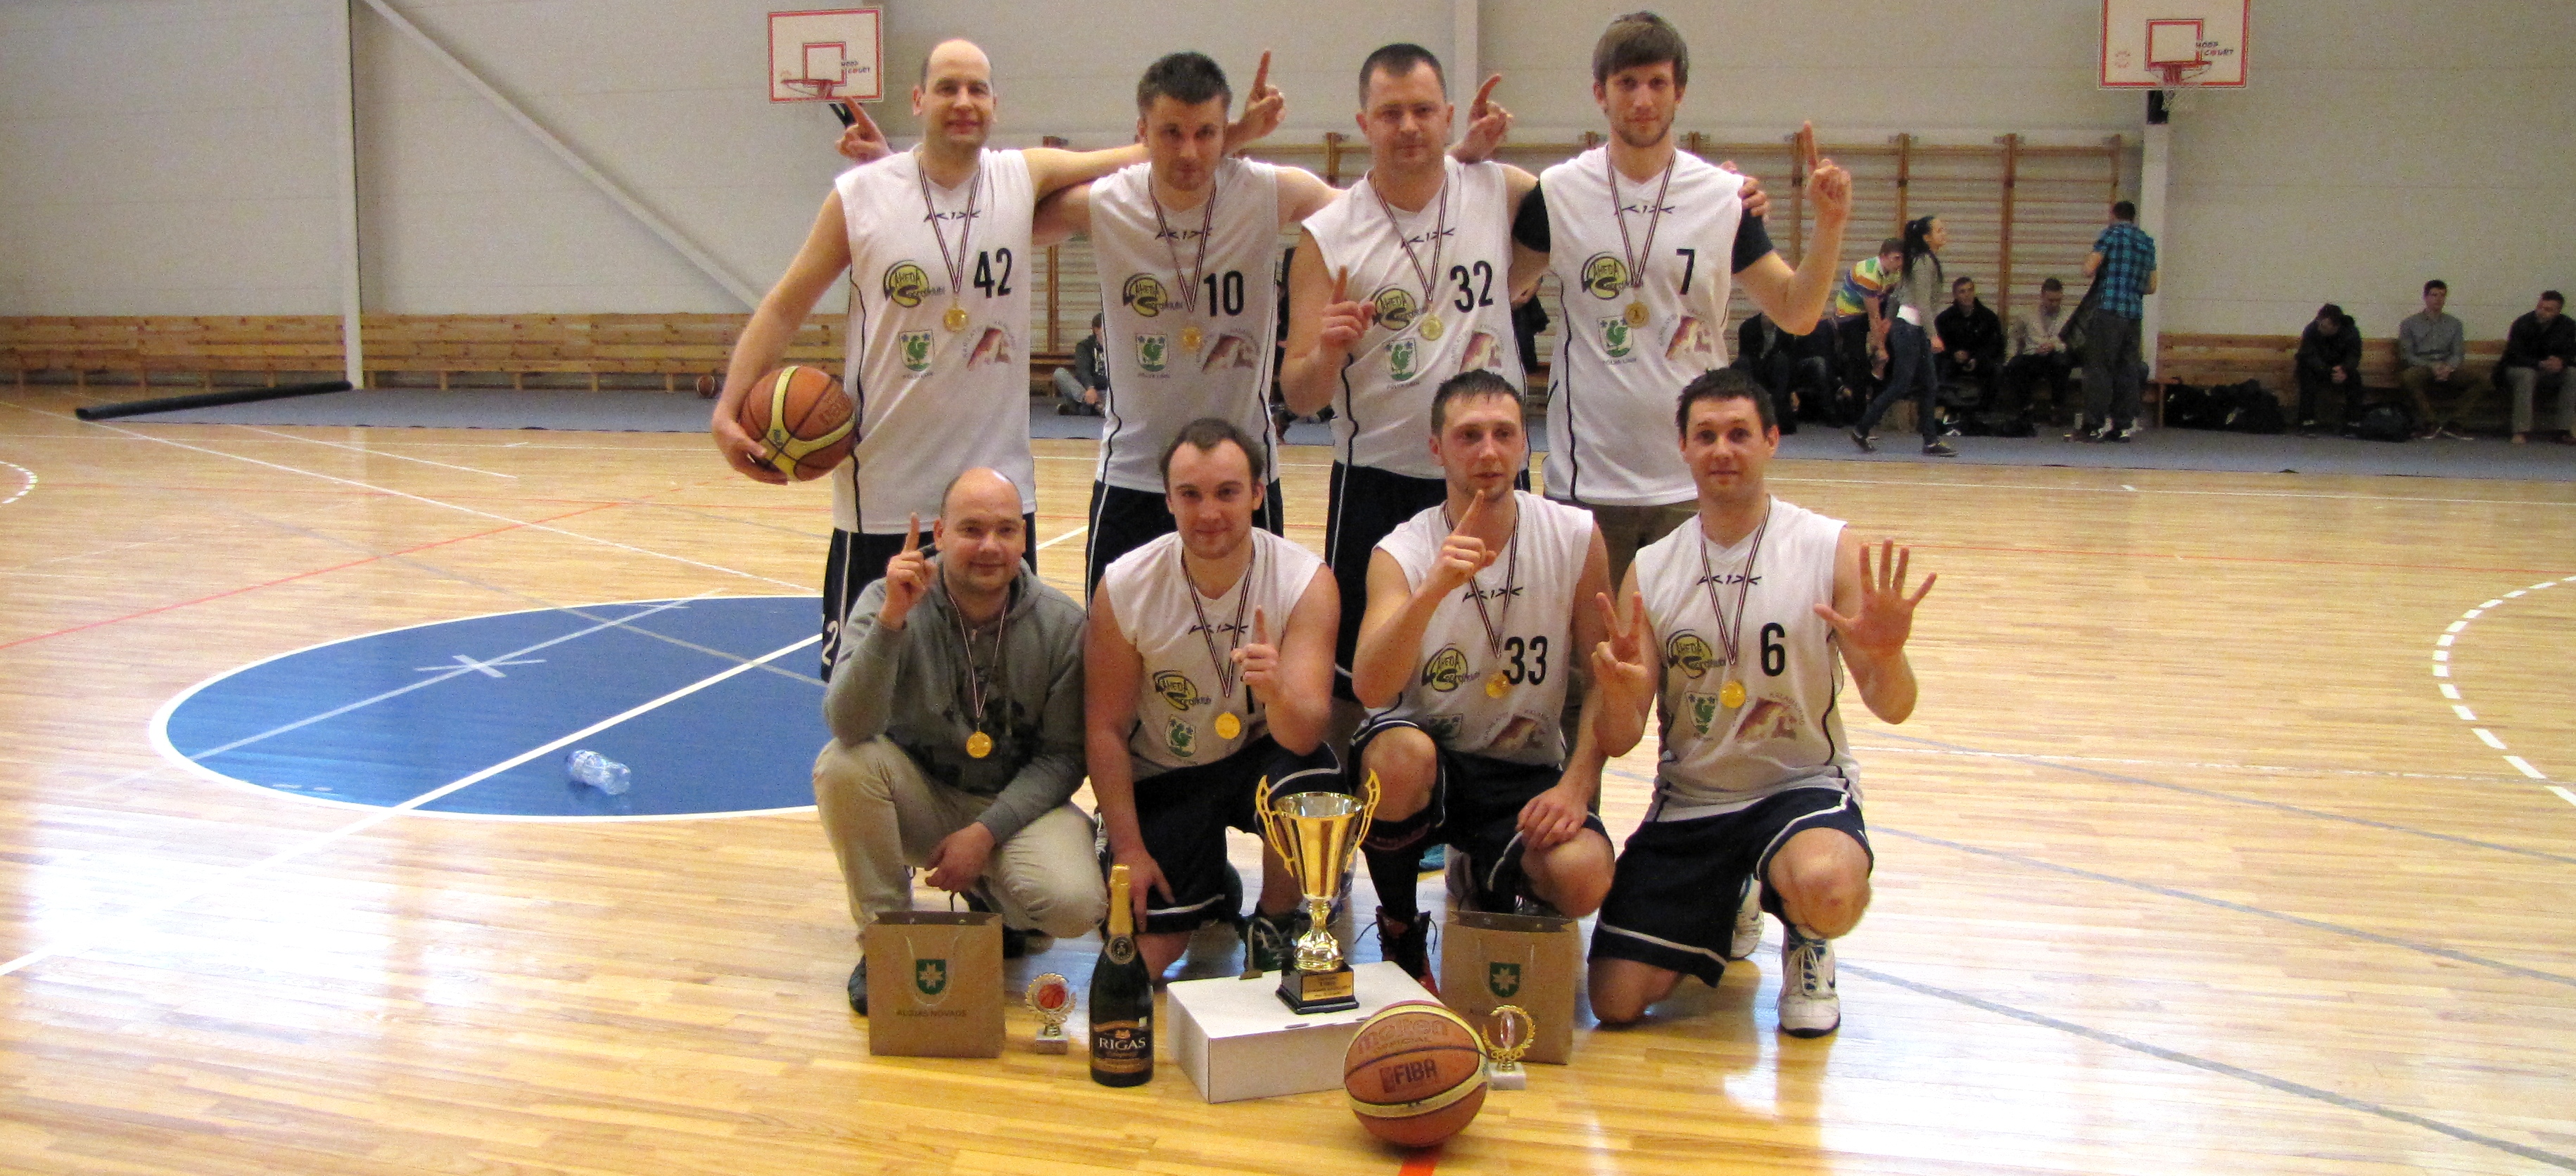 Järjekordne võit Lätimaal